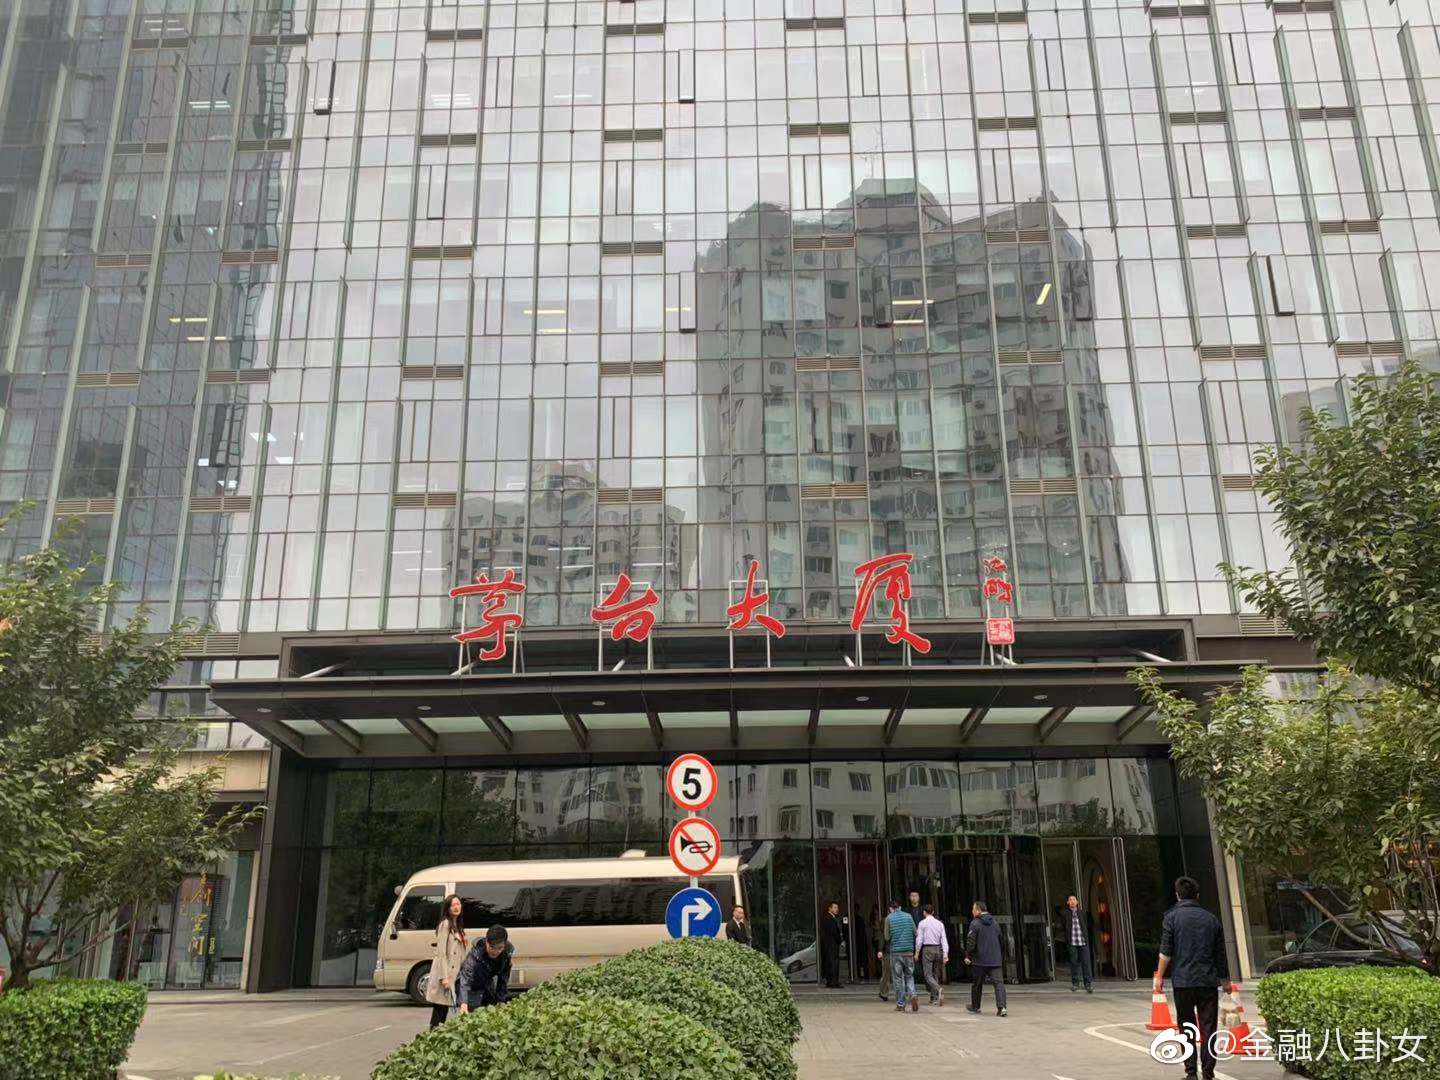 今天周六,又是验茅台酒真伪的日子,八妹在北京茅台大厦围观了一早上